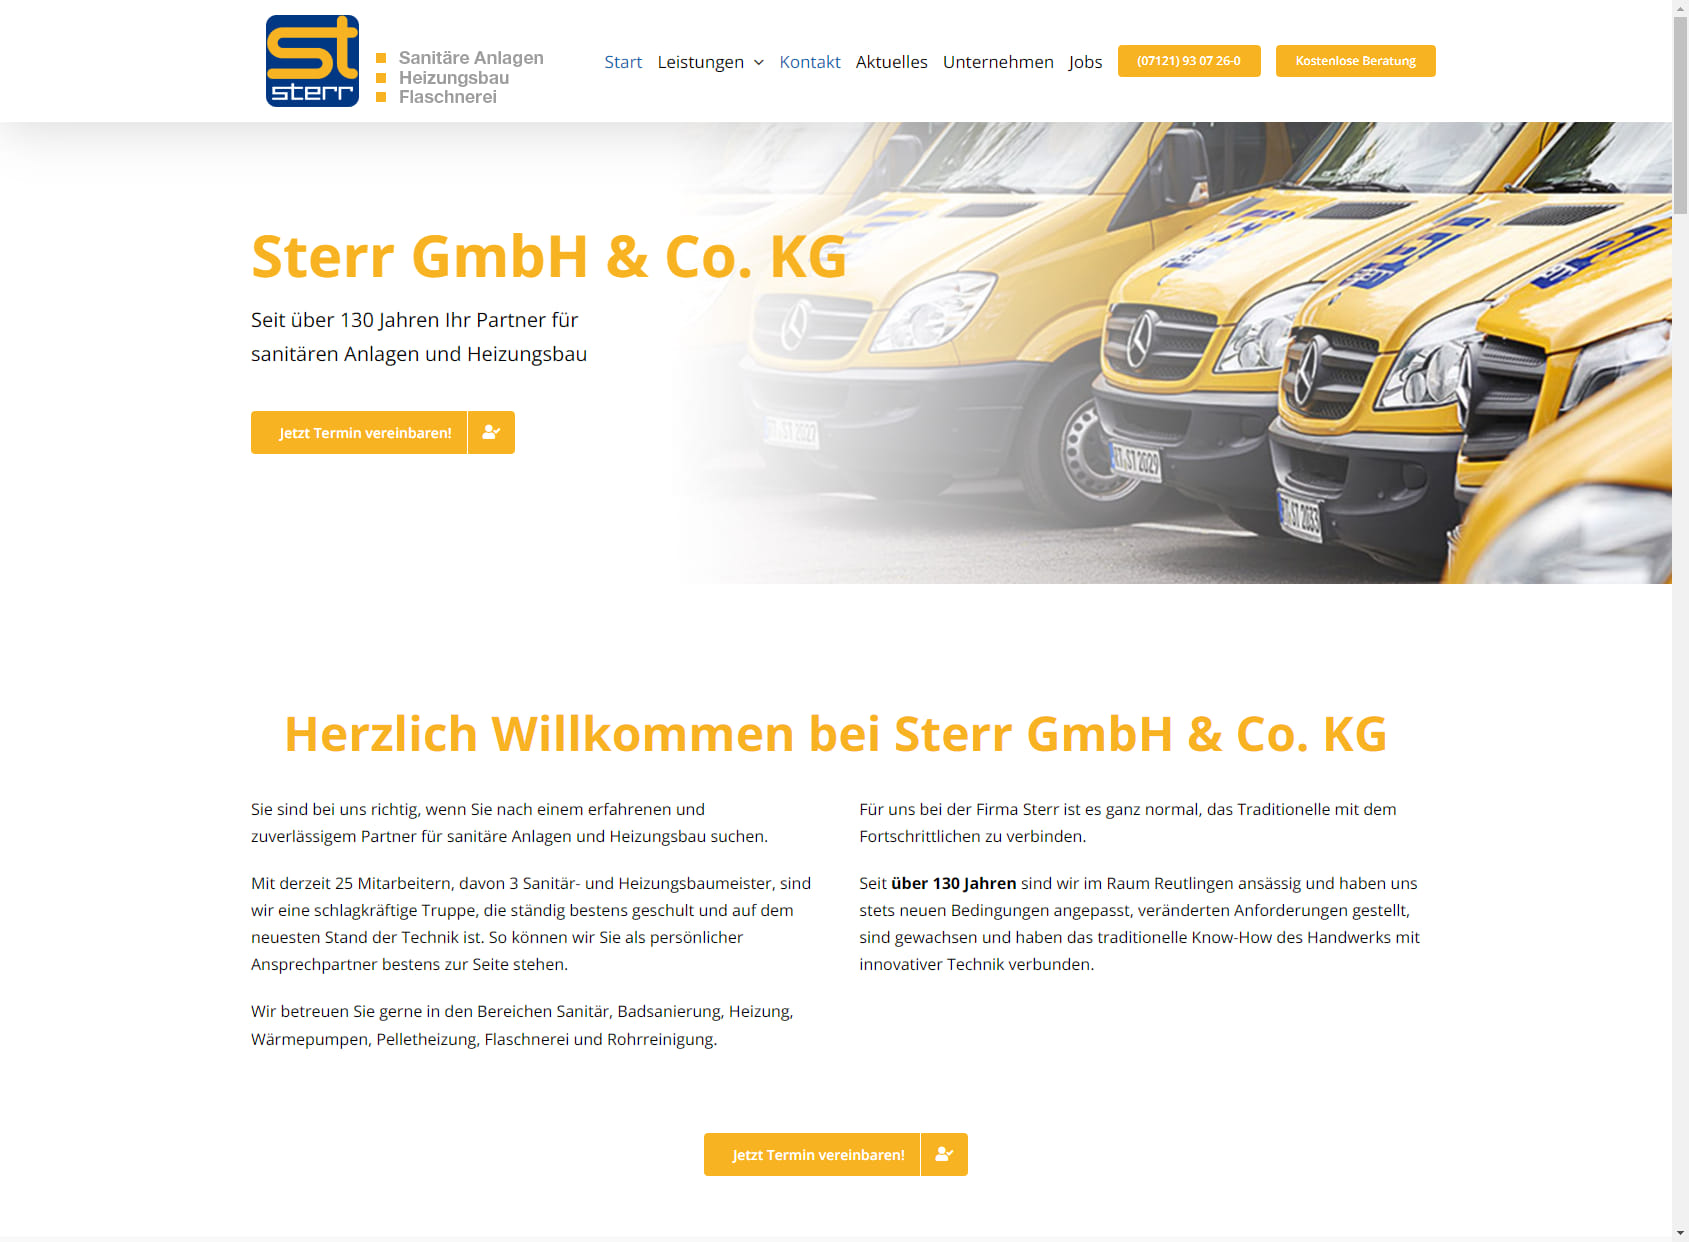 Sterr GmbH & Co. KG Sanitäre Anlagen und Heizungsbau